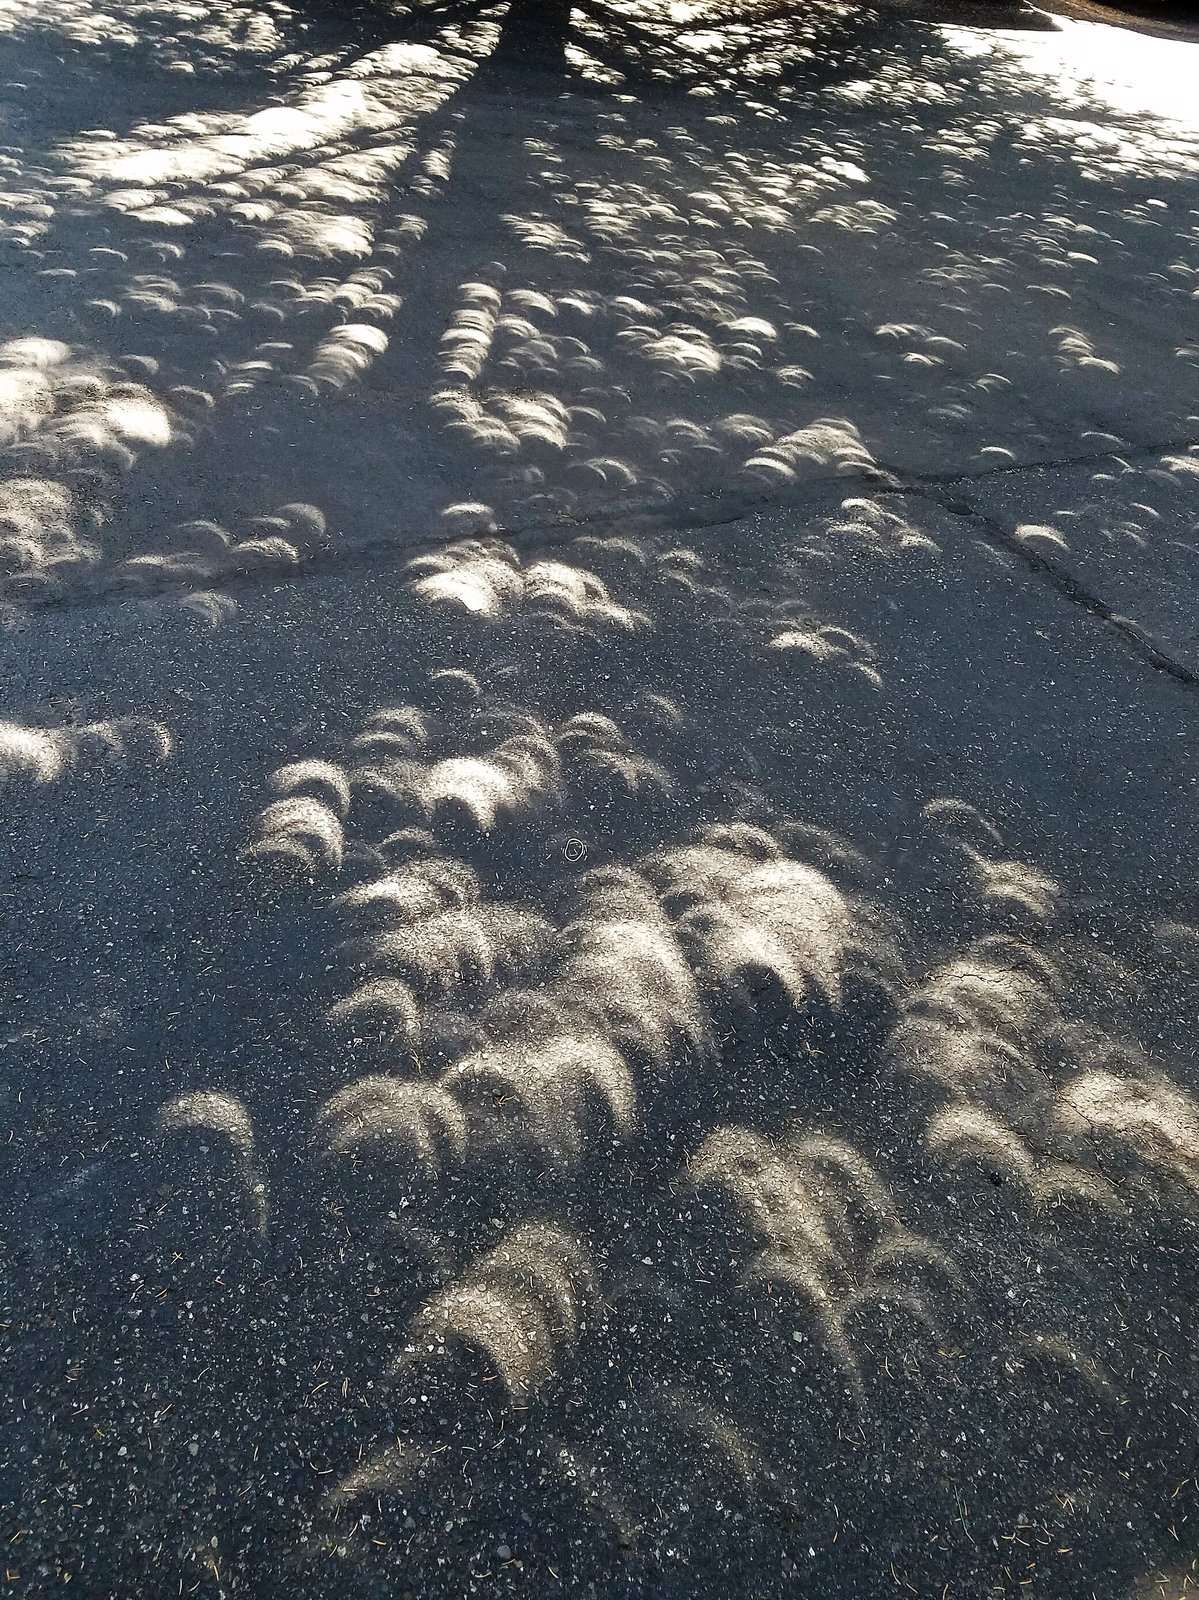 2017 Eclipse.